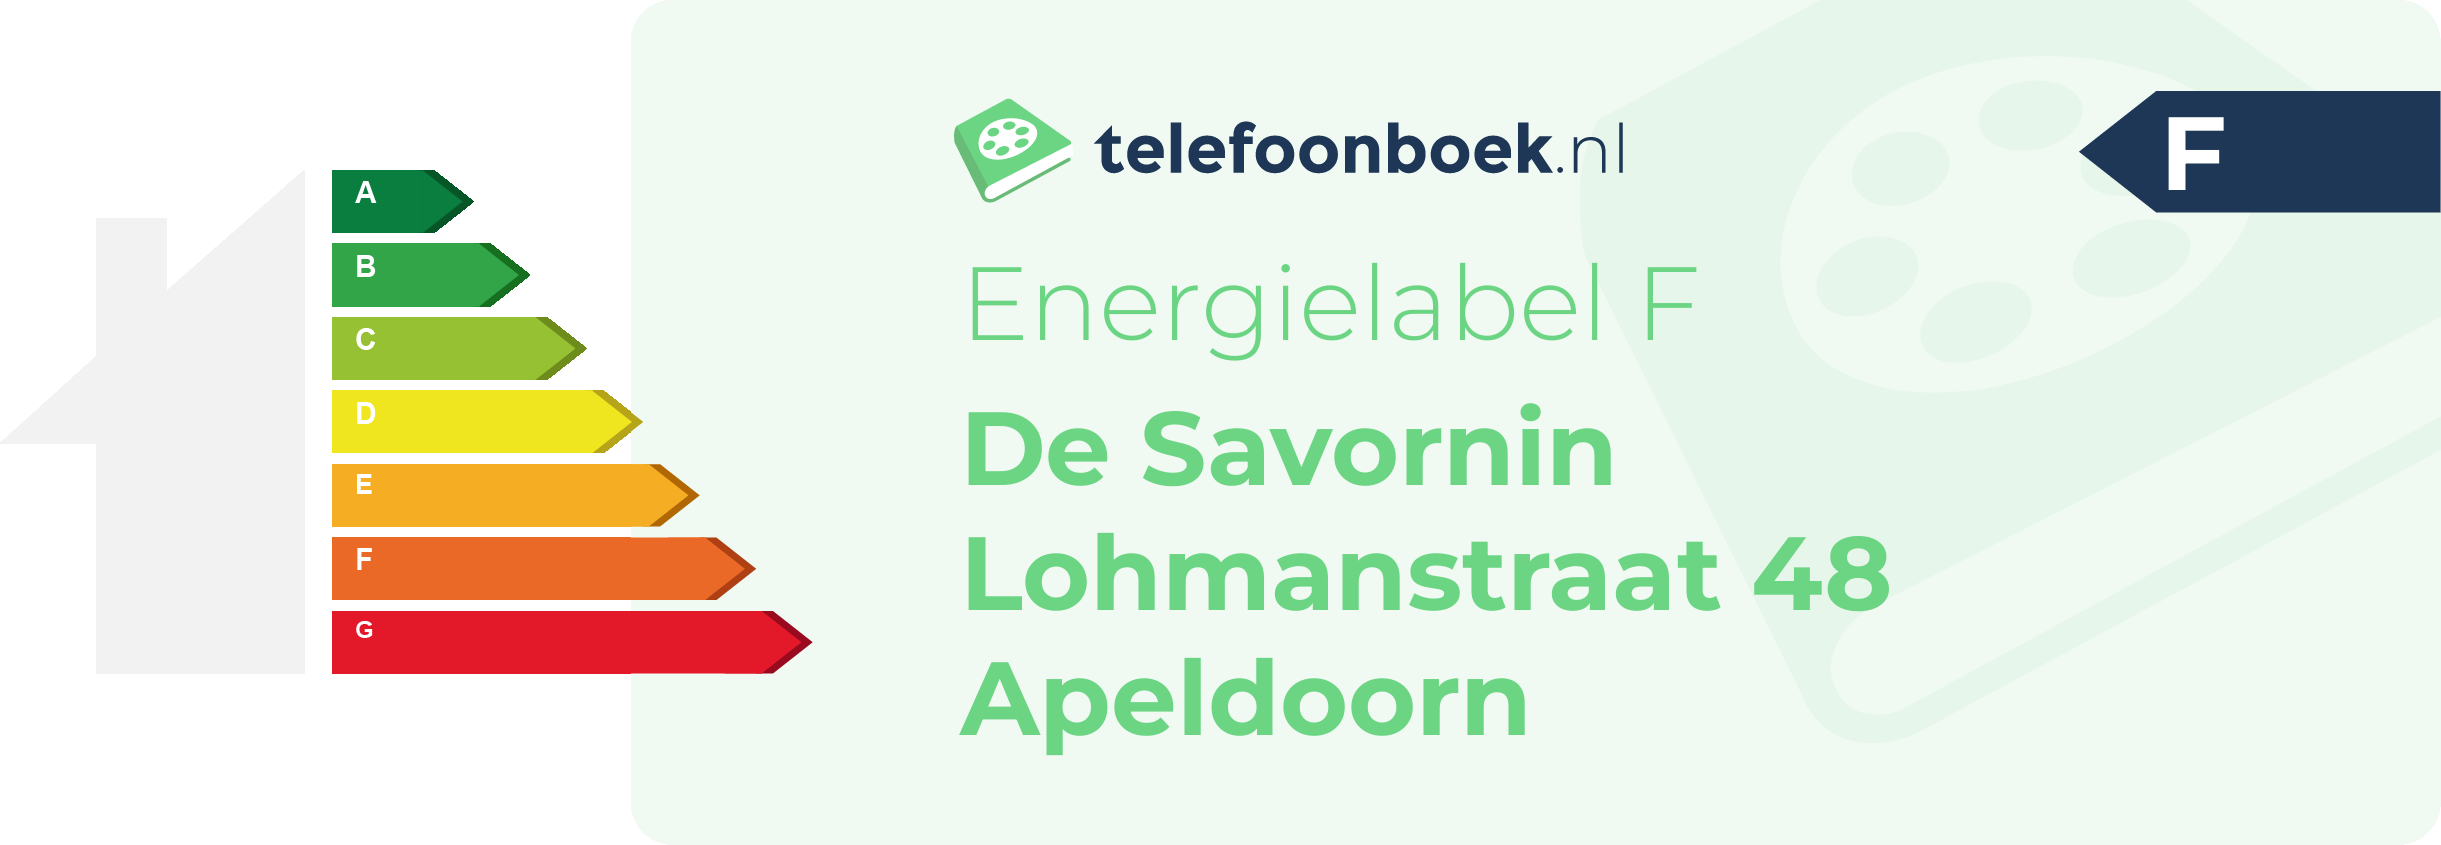 Energielabel De Savornin Lohmanstraat 48 Apeldoorn